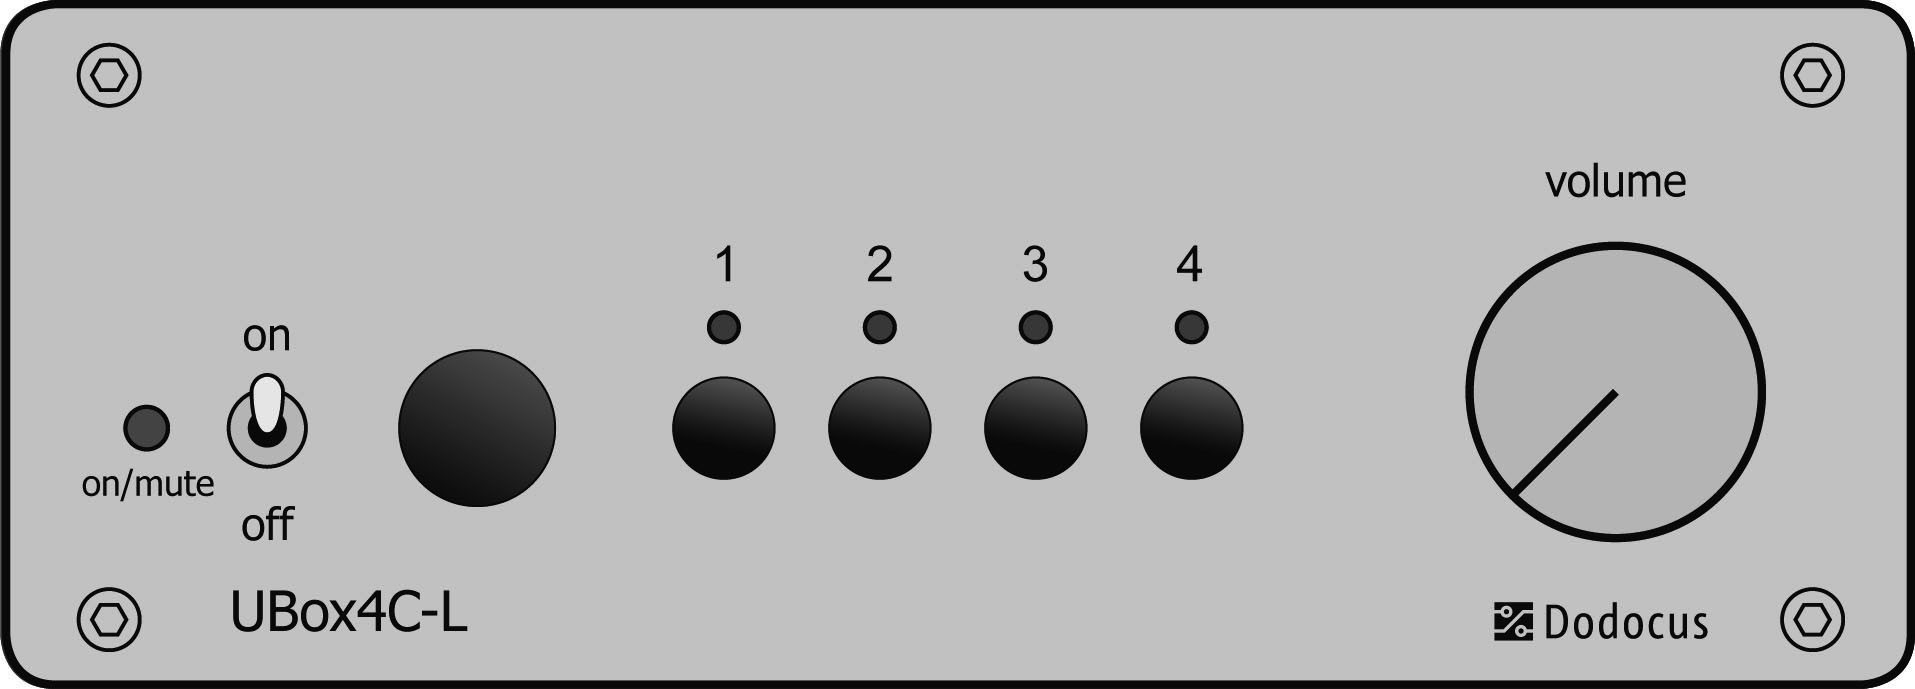 Bedienung Lautstärke Ein/Aus Eingangswahl Ein = leuchtet Mute = blinkt Mit dem Schalter an der linken Seite der UBox4C-L wird das Gerät eingeschaltet.